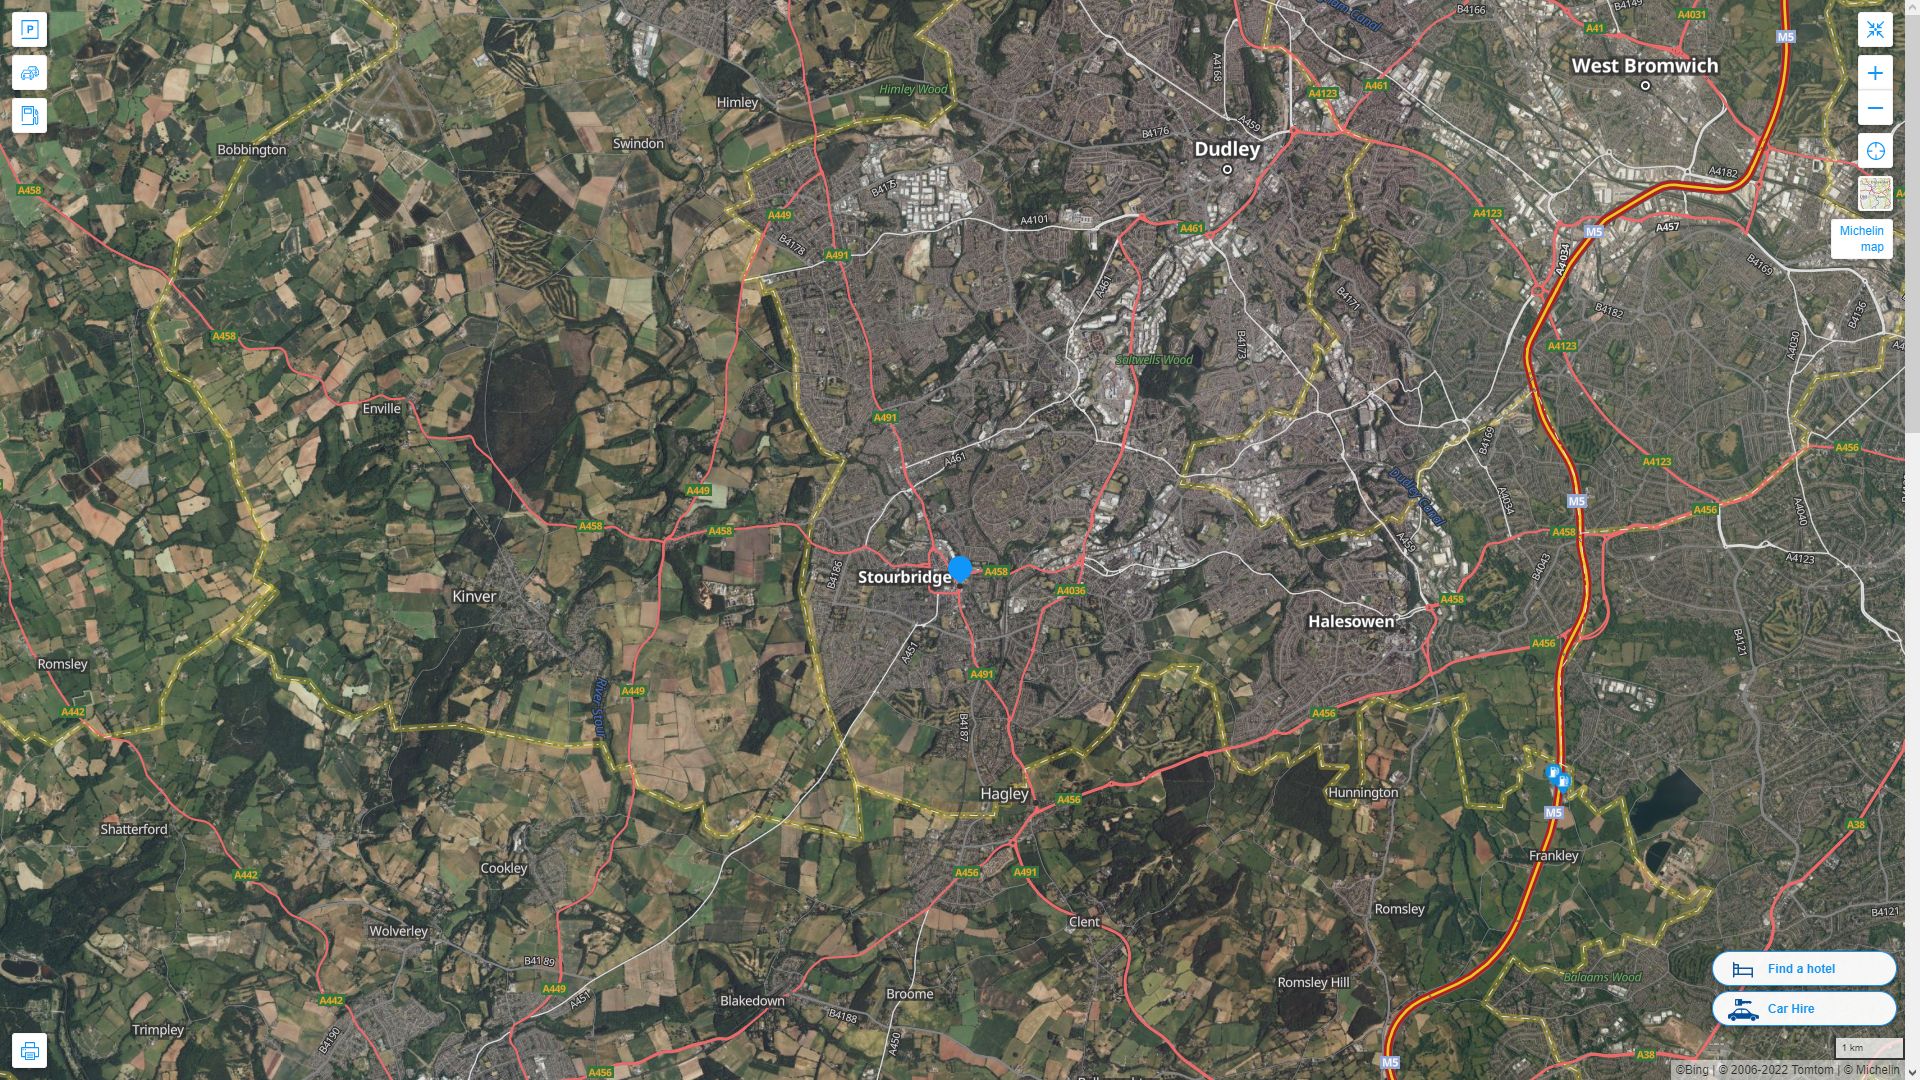 Stourbridge Royaume Uni Autoroute et carte routiere avec vue satellite